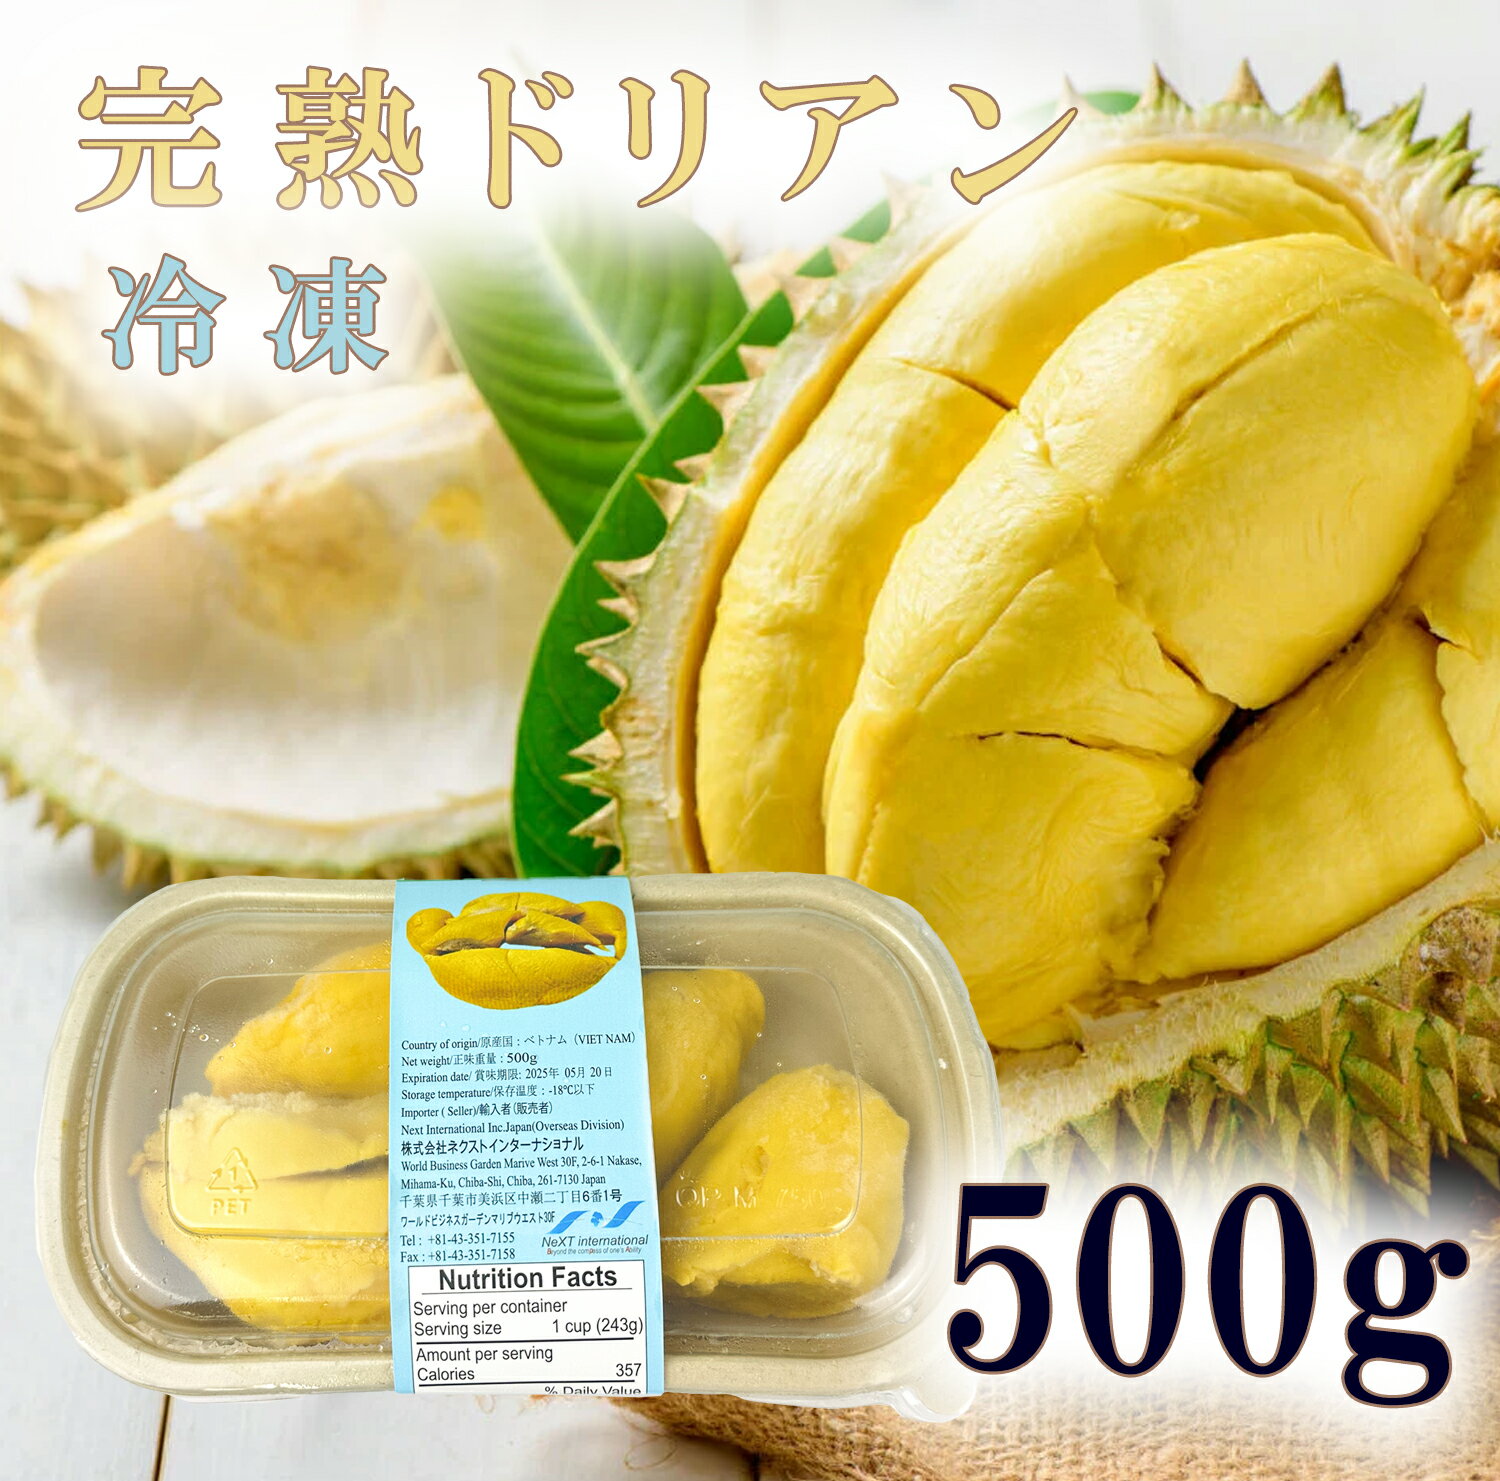 冷凍 ドリアン 甘い 種付き ベトナム産 Frozen durian フローズン 冷凍ドリアン 冷凍フルーツ 榴連 独特のにおいが有名ですが 美味しさは悪魔的だと例えられる強い甘さが特長 果物の王様ドリア…